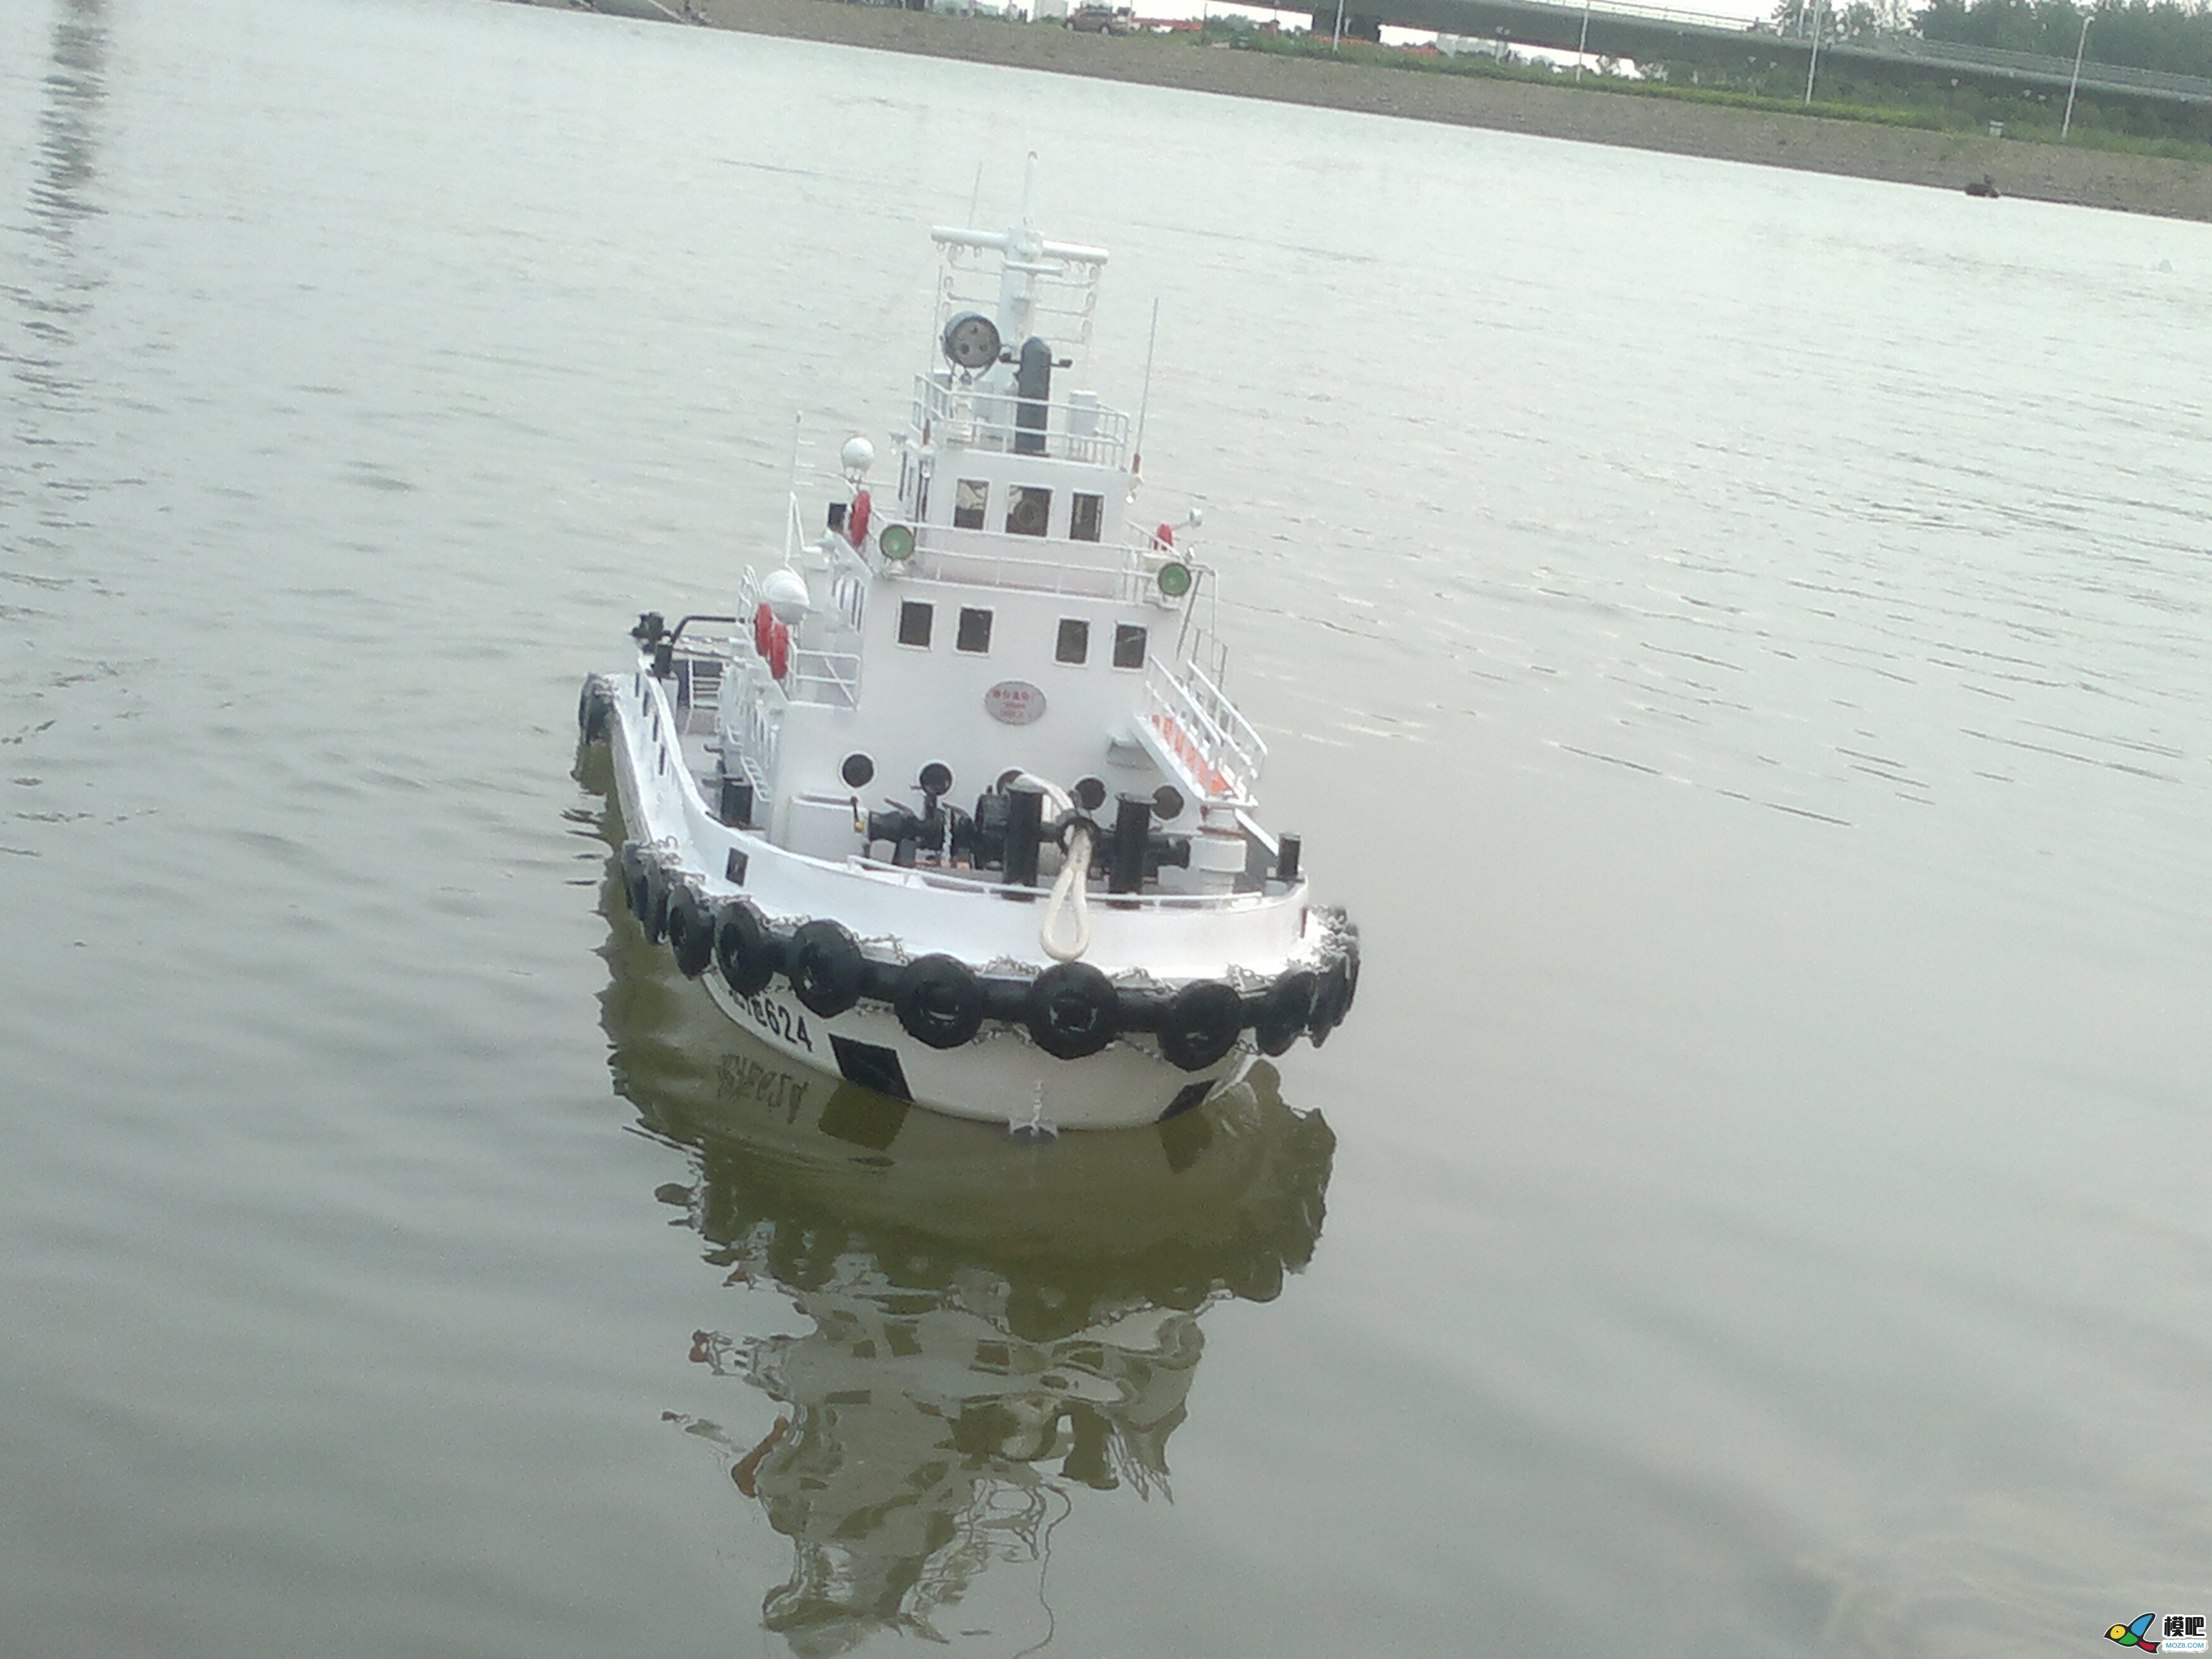 因为怀念所以制作，海军拖船制作小记 海军小型拖船,中国海军拖船,海军布缆船 作者:艇长 1301 